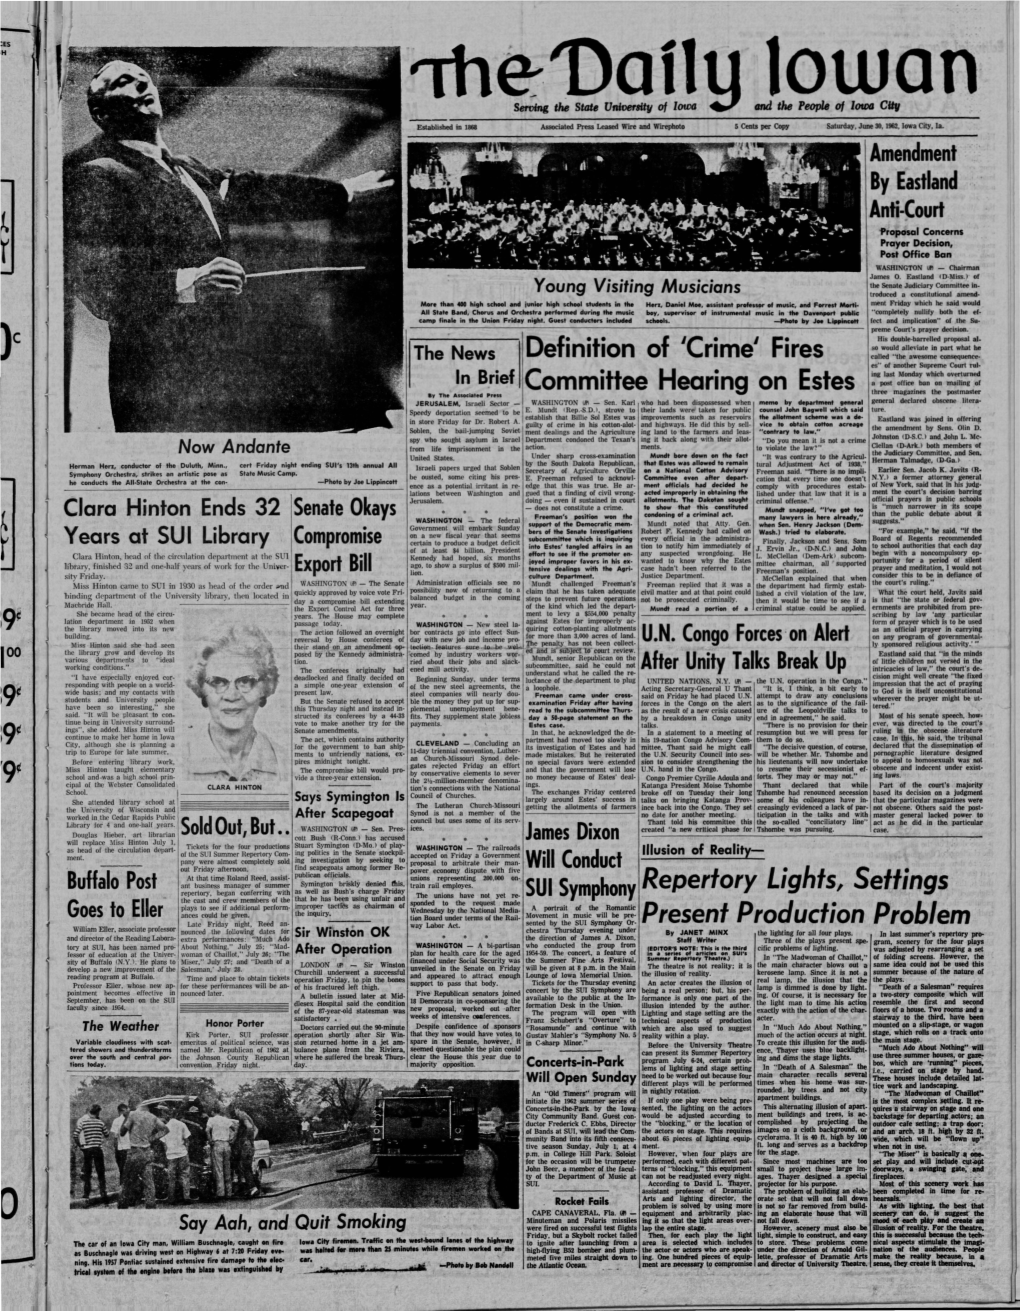 Daily Iowan (Iowa City, Iowa), 1962-06-30